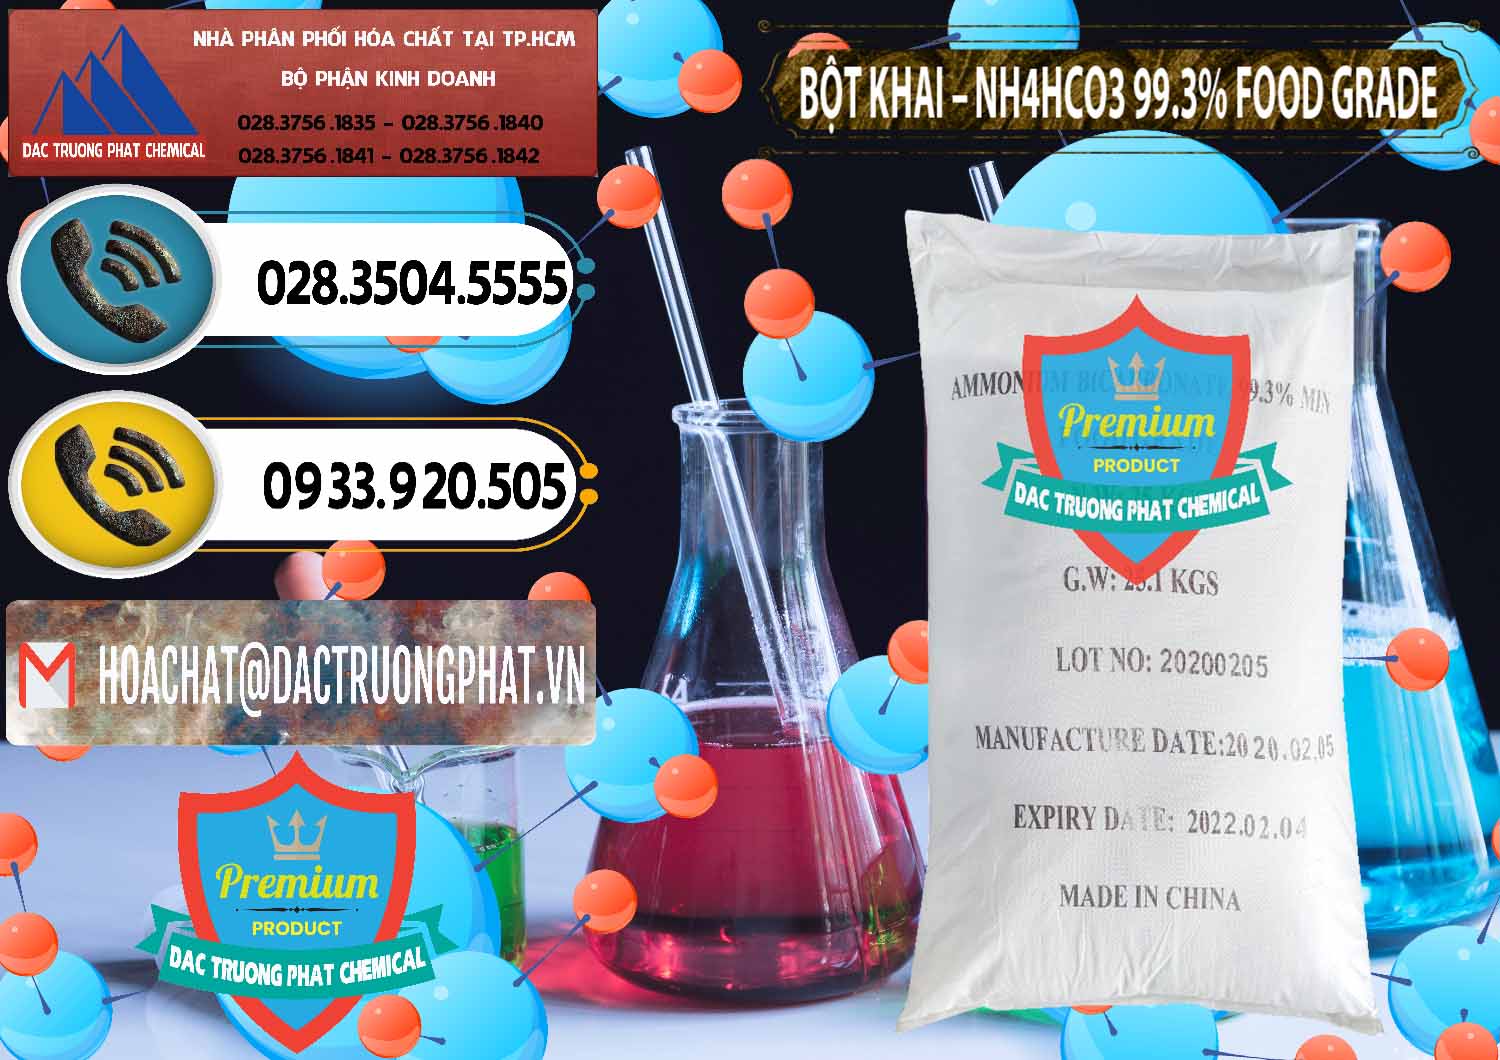 Cty chuyên cung ứng - bán Ammonium Bicarbonate – Bột Khai NH4HCO3 Food Grade Trung Quốc China - 0019 - Đơn vị chuyên cung cấp _ nhập khẩu hóa chất tại TP.HCM - hoachatdetnhuom.vn